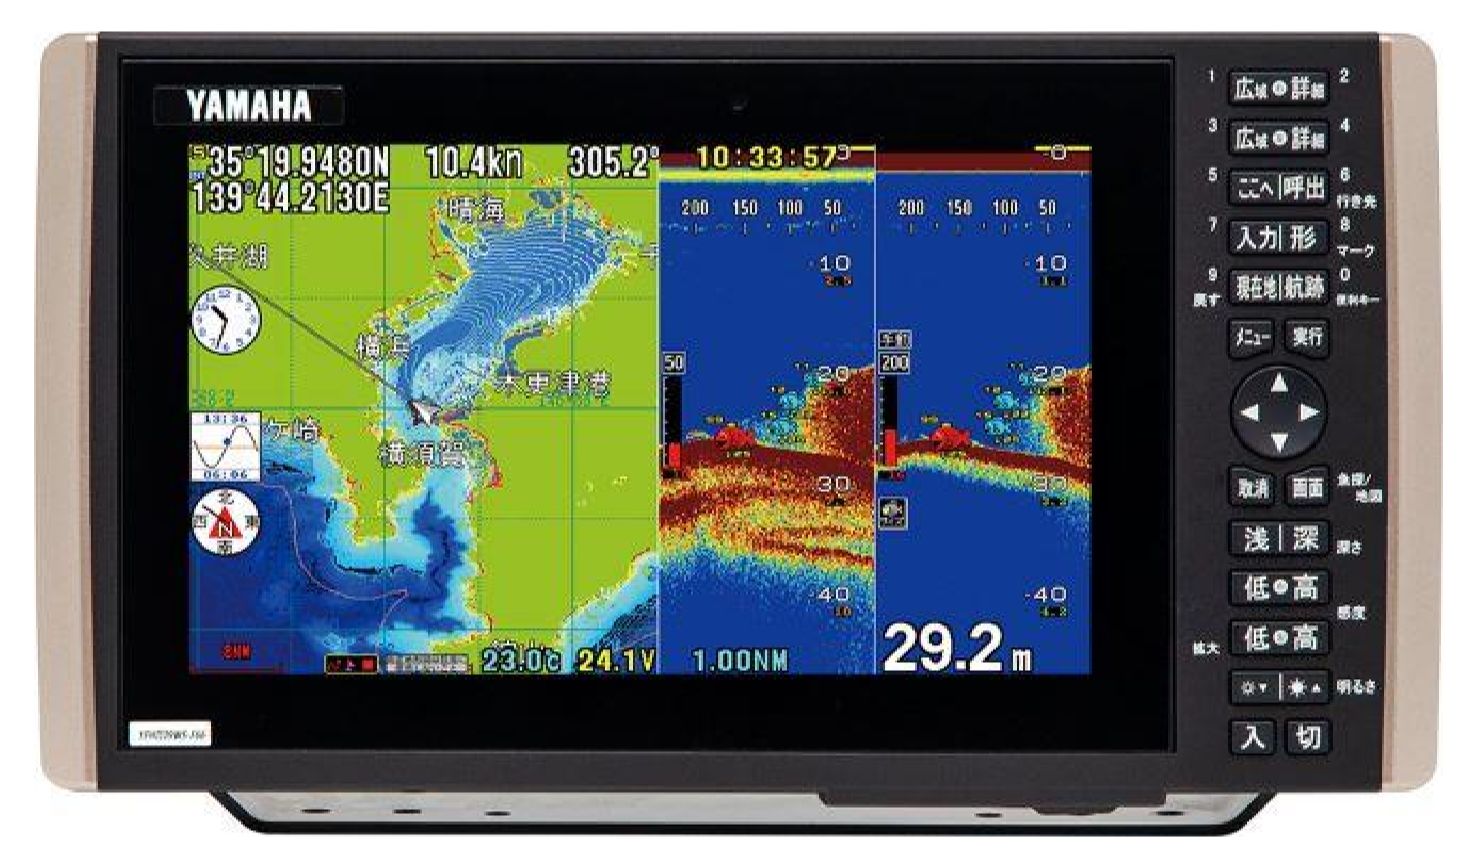 YFHIII09WS-F66i 600W YAMAHA ( ヤマハ ) デプスマッピング機能搭載 9型ワイドカラー液晶 GPSプロッター魚探 YFH3-09WS-F66i[]